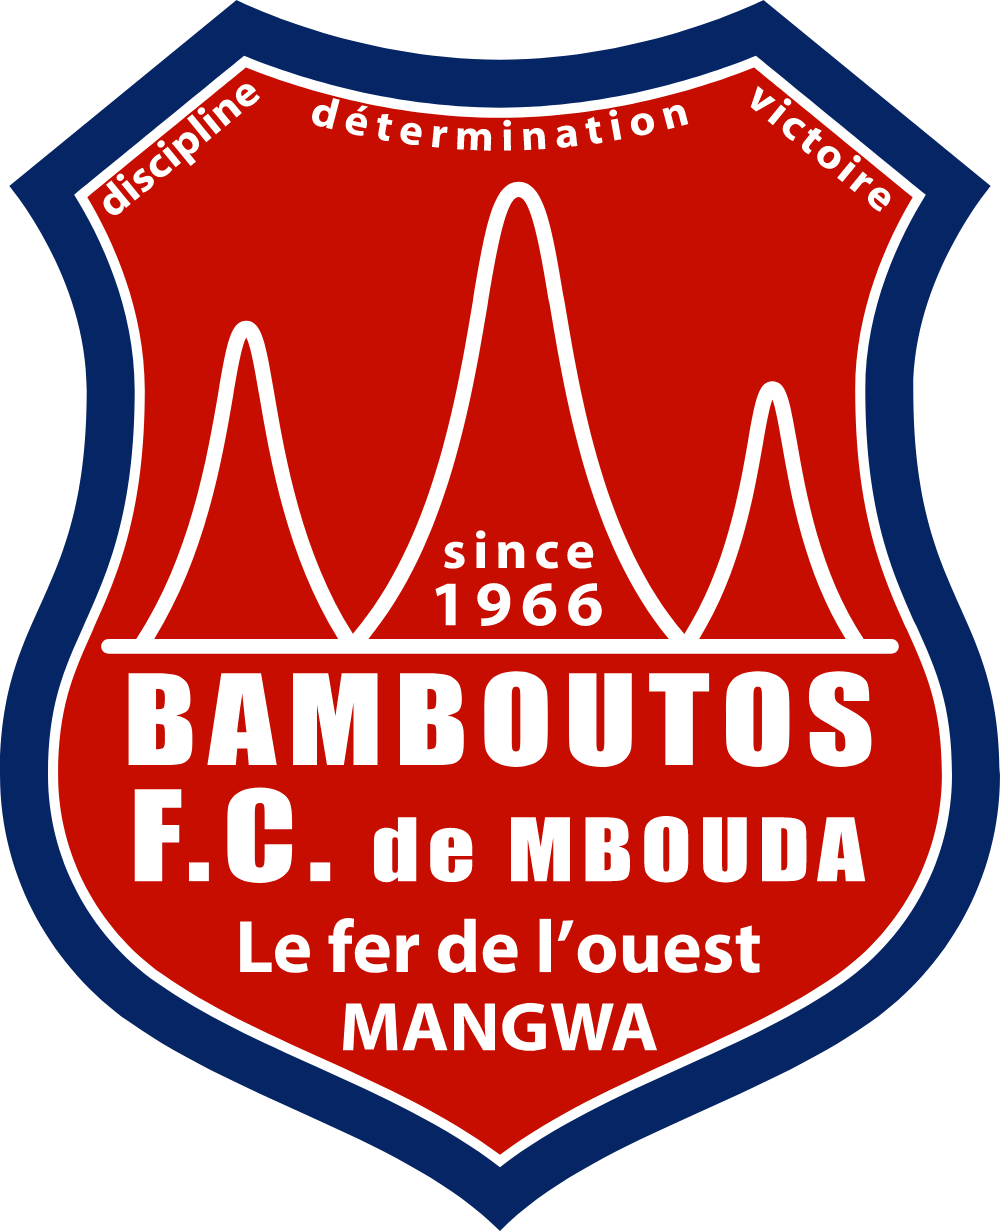 Bamboutos FC de Mbouda Logo Logos